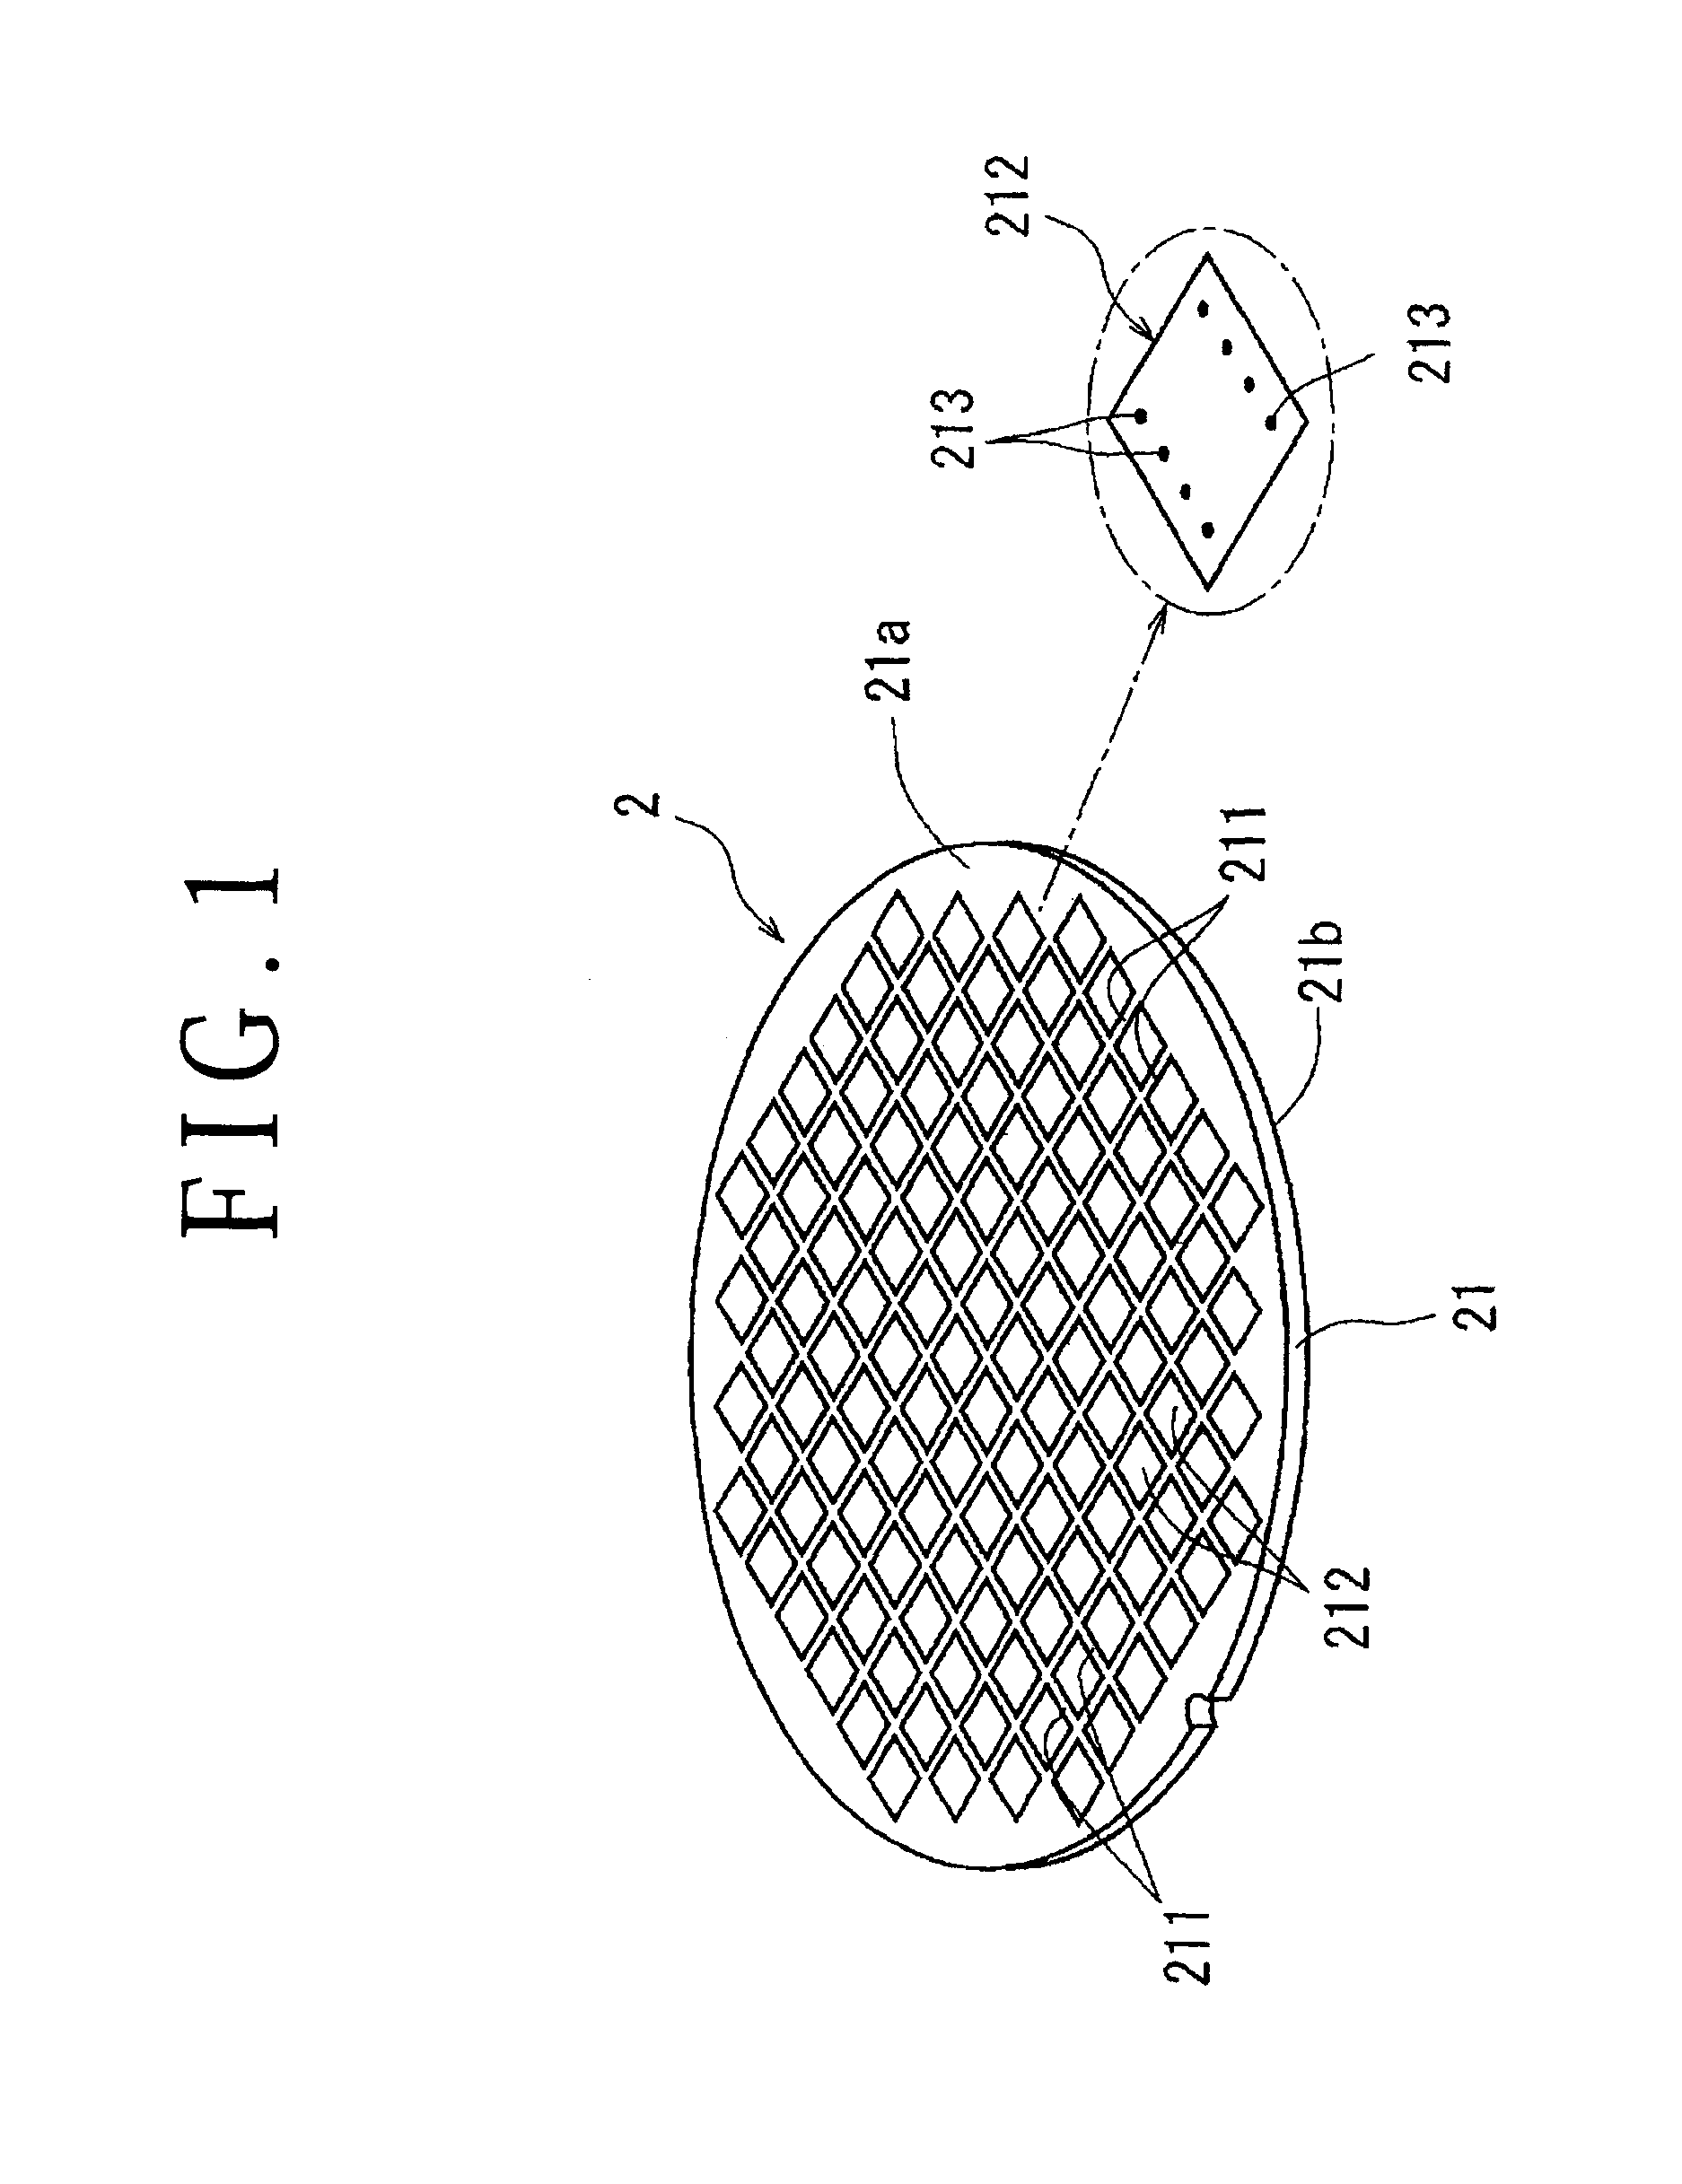 Processing method for wafer having embedded electrodes